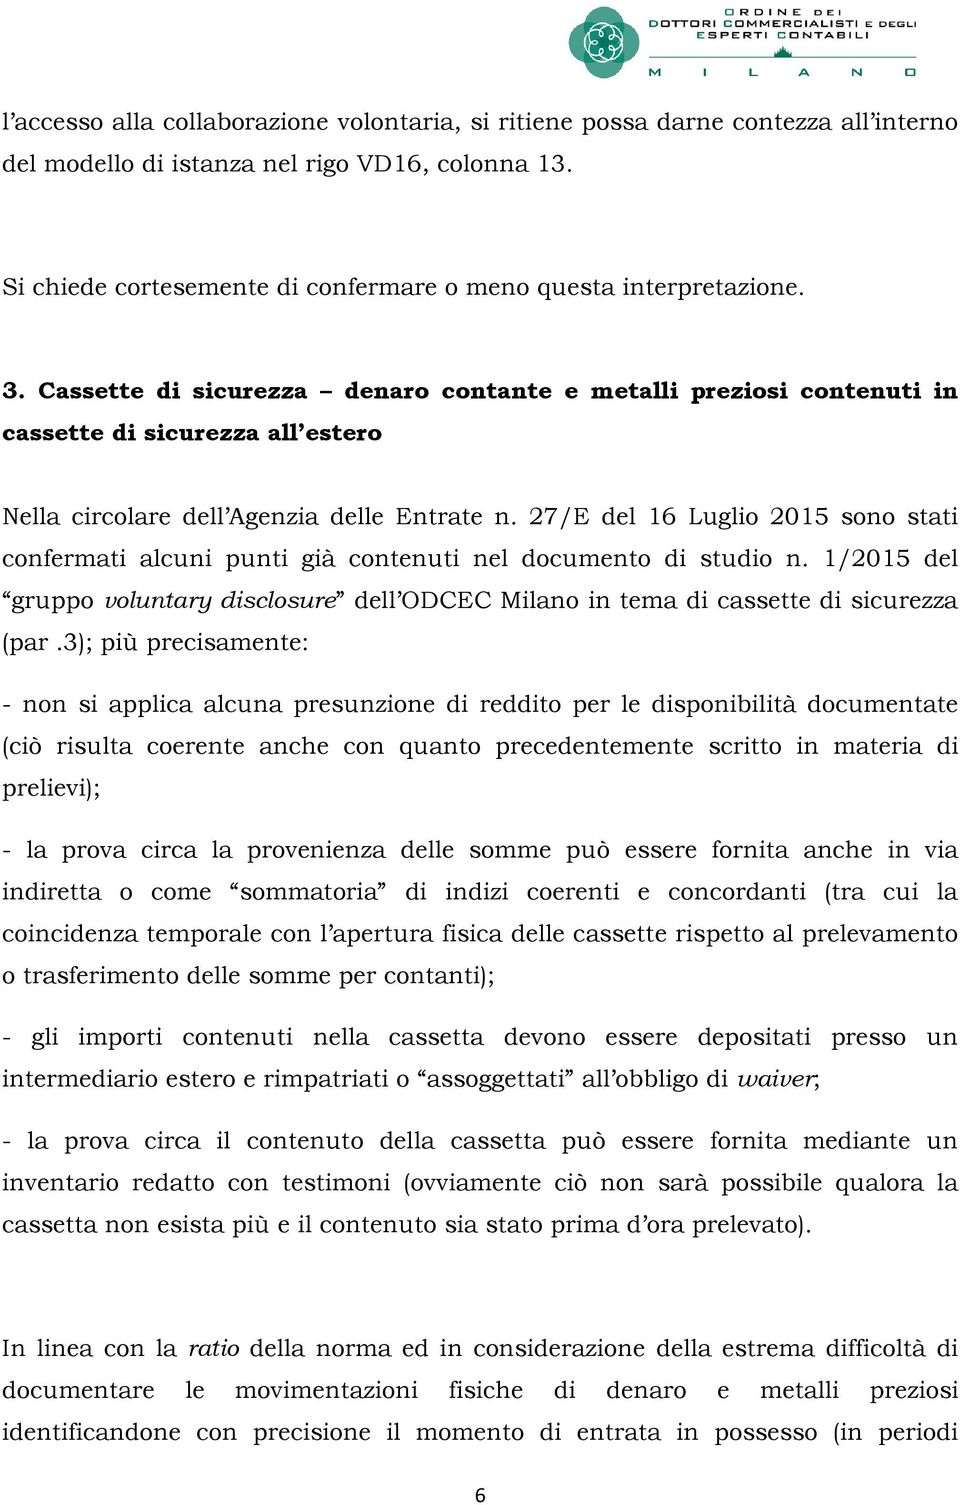 27/E del 16 Luglio 2015 sono stati confermati alcuni punti già contenuti nel documento di studio n. 1/2015 del gruppo voluntary disclosure dell ODCEC Milano in tema di cassette di sicurezza (par.